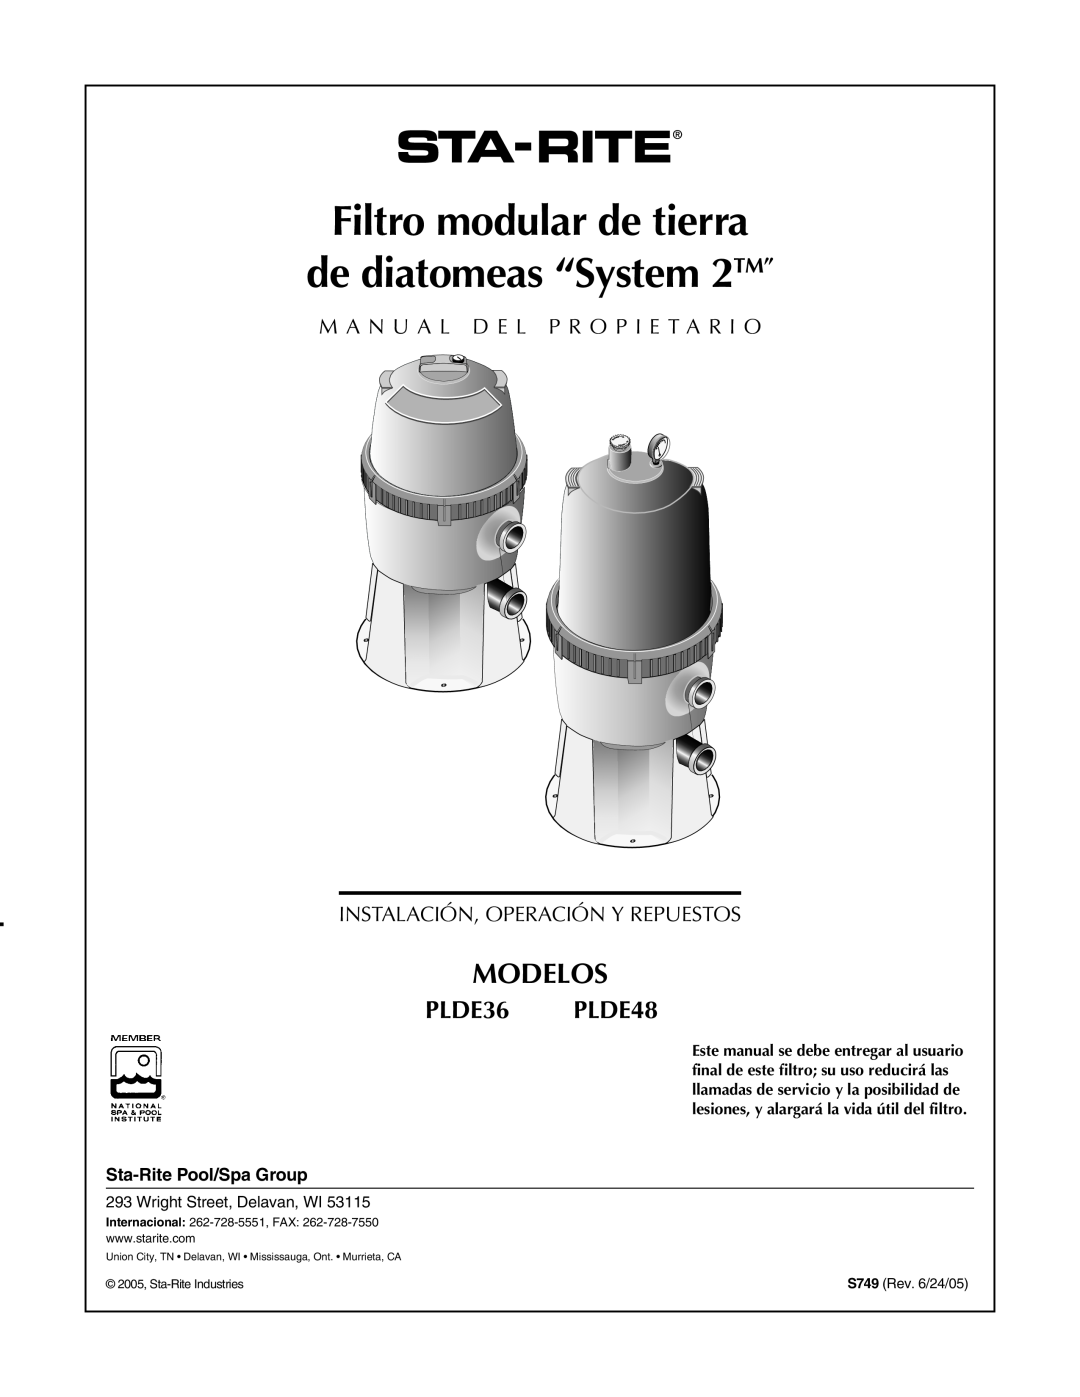 Pentair PLDE48 Filtro modular de tierra, de diatomeas “System 2TM”, Modelos, M A N U A L D E L P R O P I E T A R I O 